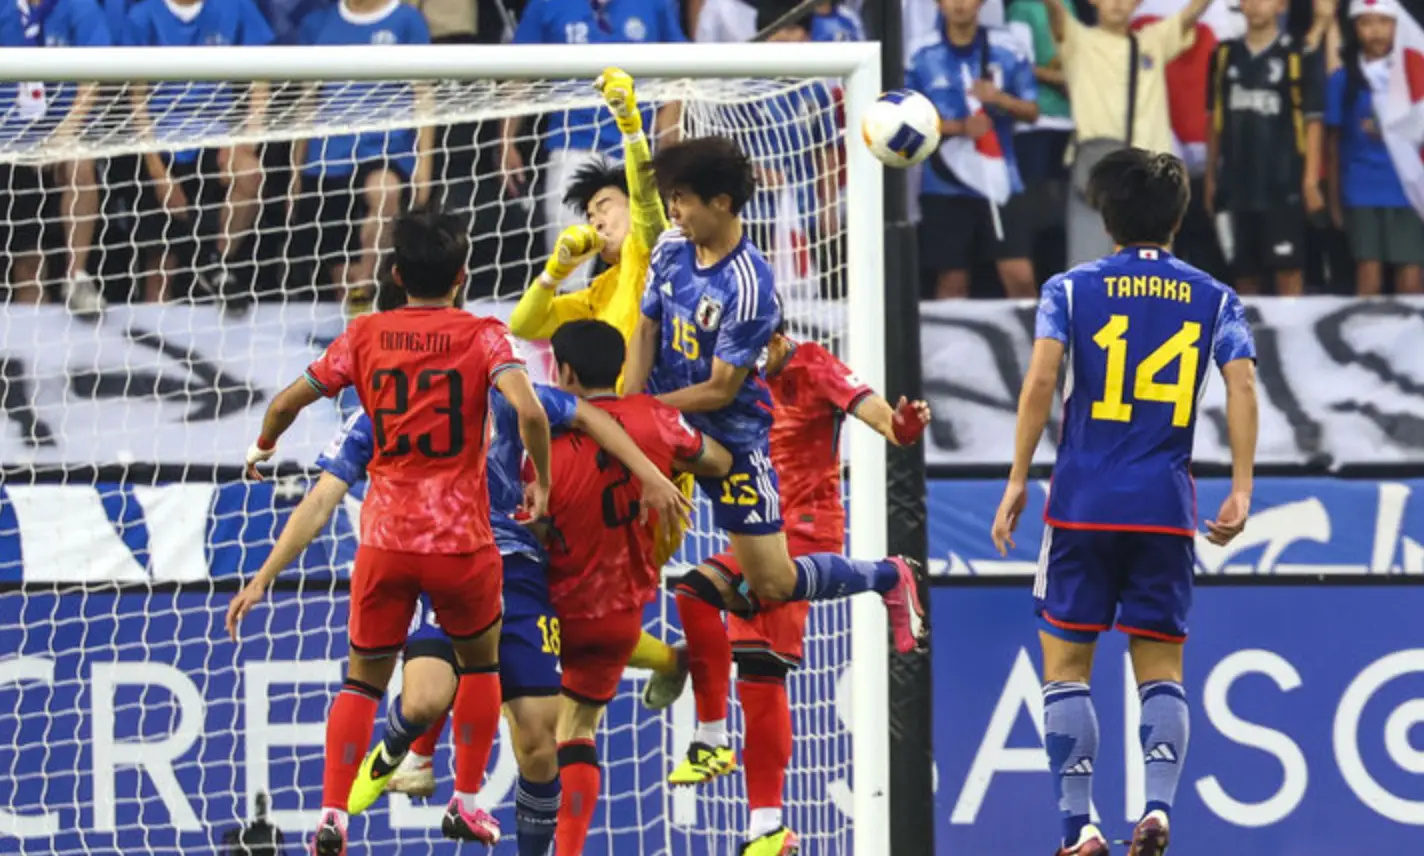 파리-흰색 골문앞 노란옷을 입운 골키퍼가 점프하는 일본선수와 몸싸움을 하고 이를 지켜보는 붉은 유니폼 국가대표선수와 파란유니폼 일본 국가대표선수들